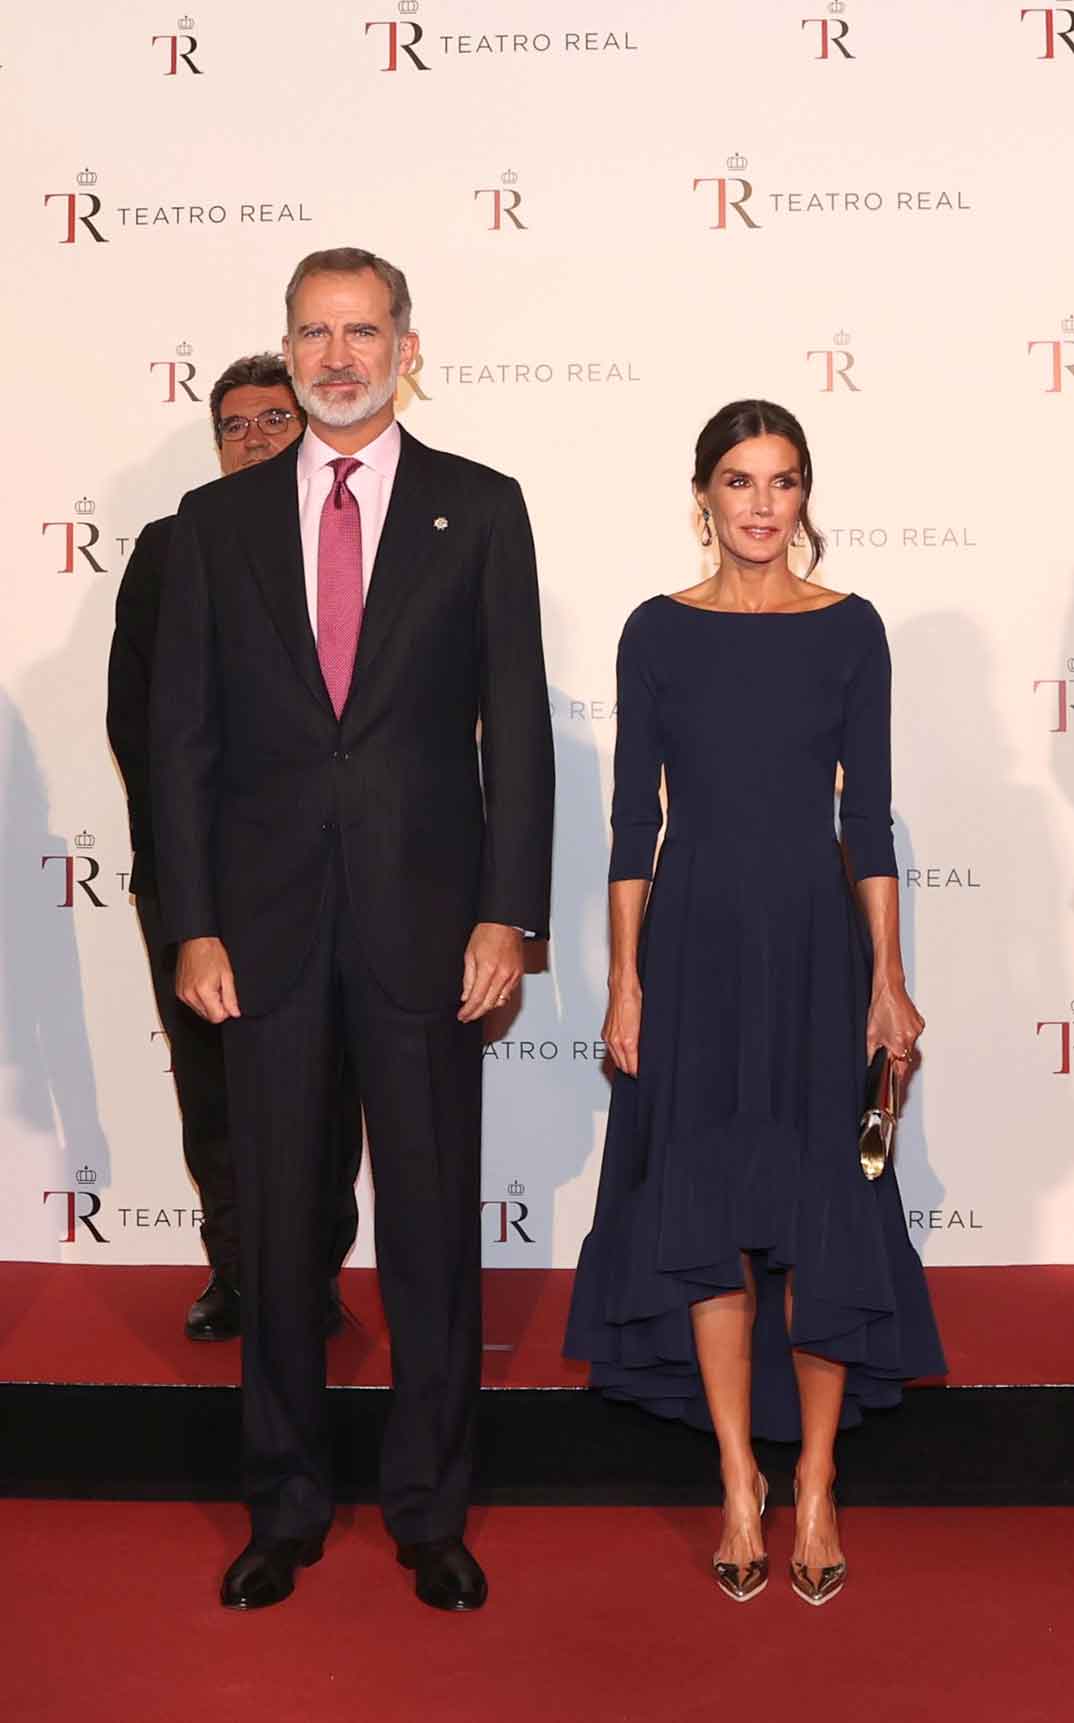 Rey Felipe y Reina Letizia - Inauguración de la temporada lírica 2022/2023 del Teatro Real de Madrid © Casa S.M. El Rey